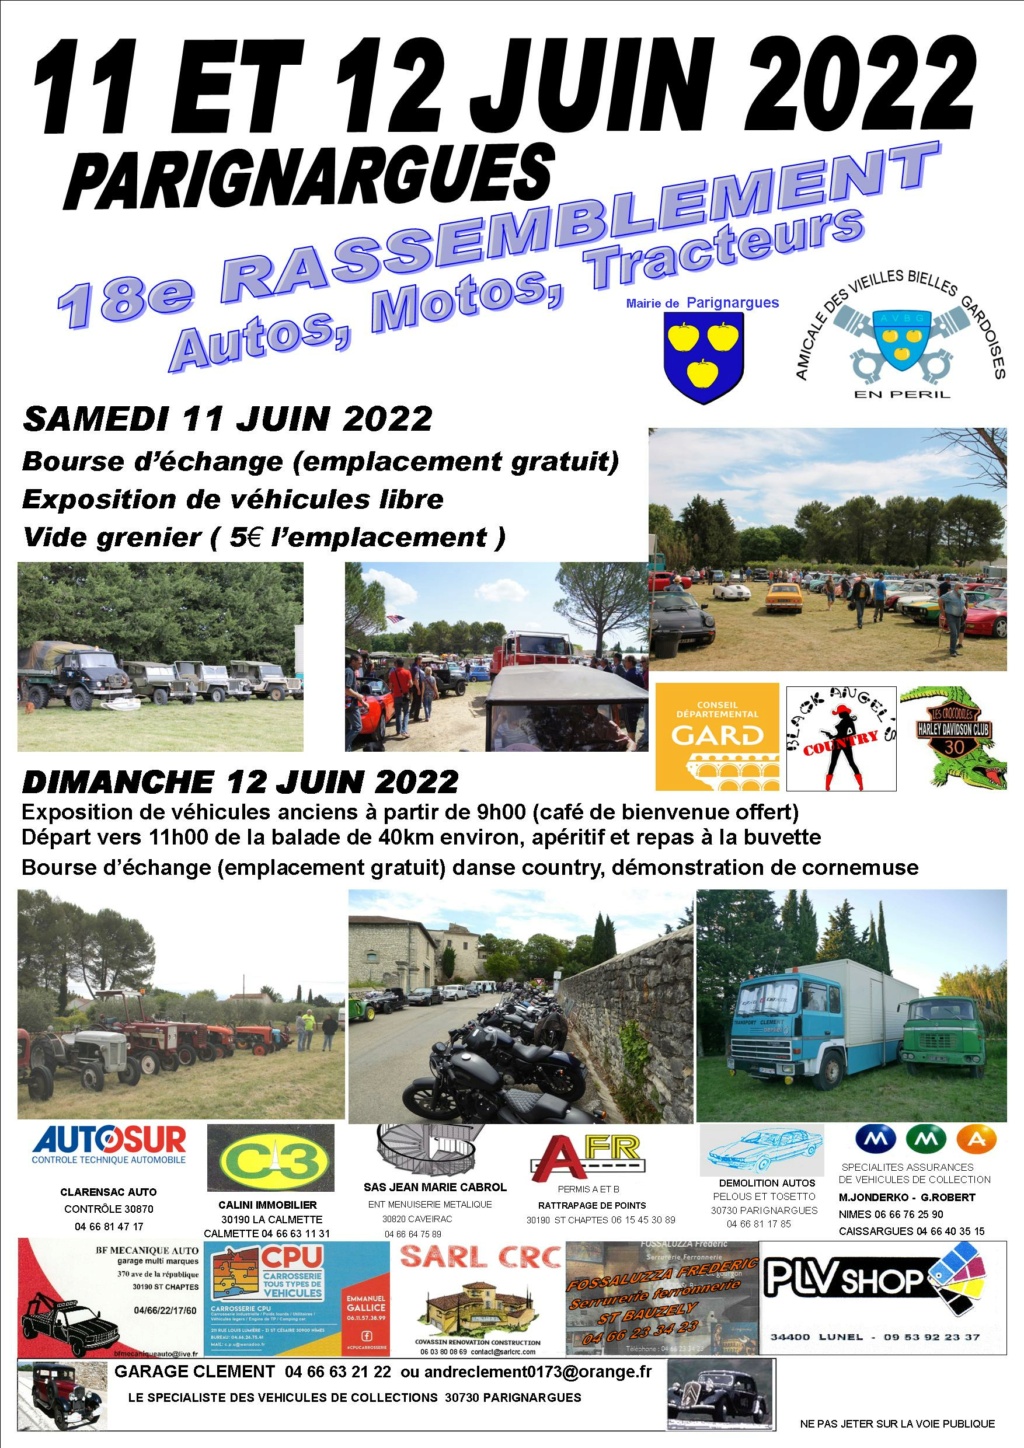 MANIFESTATION - 18 ème Rassemblement Autos Motos Tracteurs - 11 & 12 Juin 2022 - Parignargues 2022af11